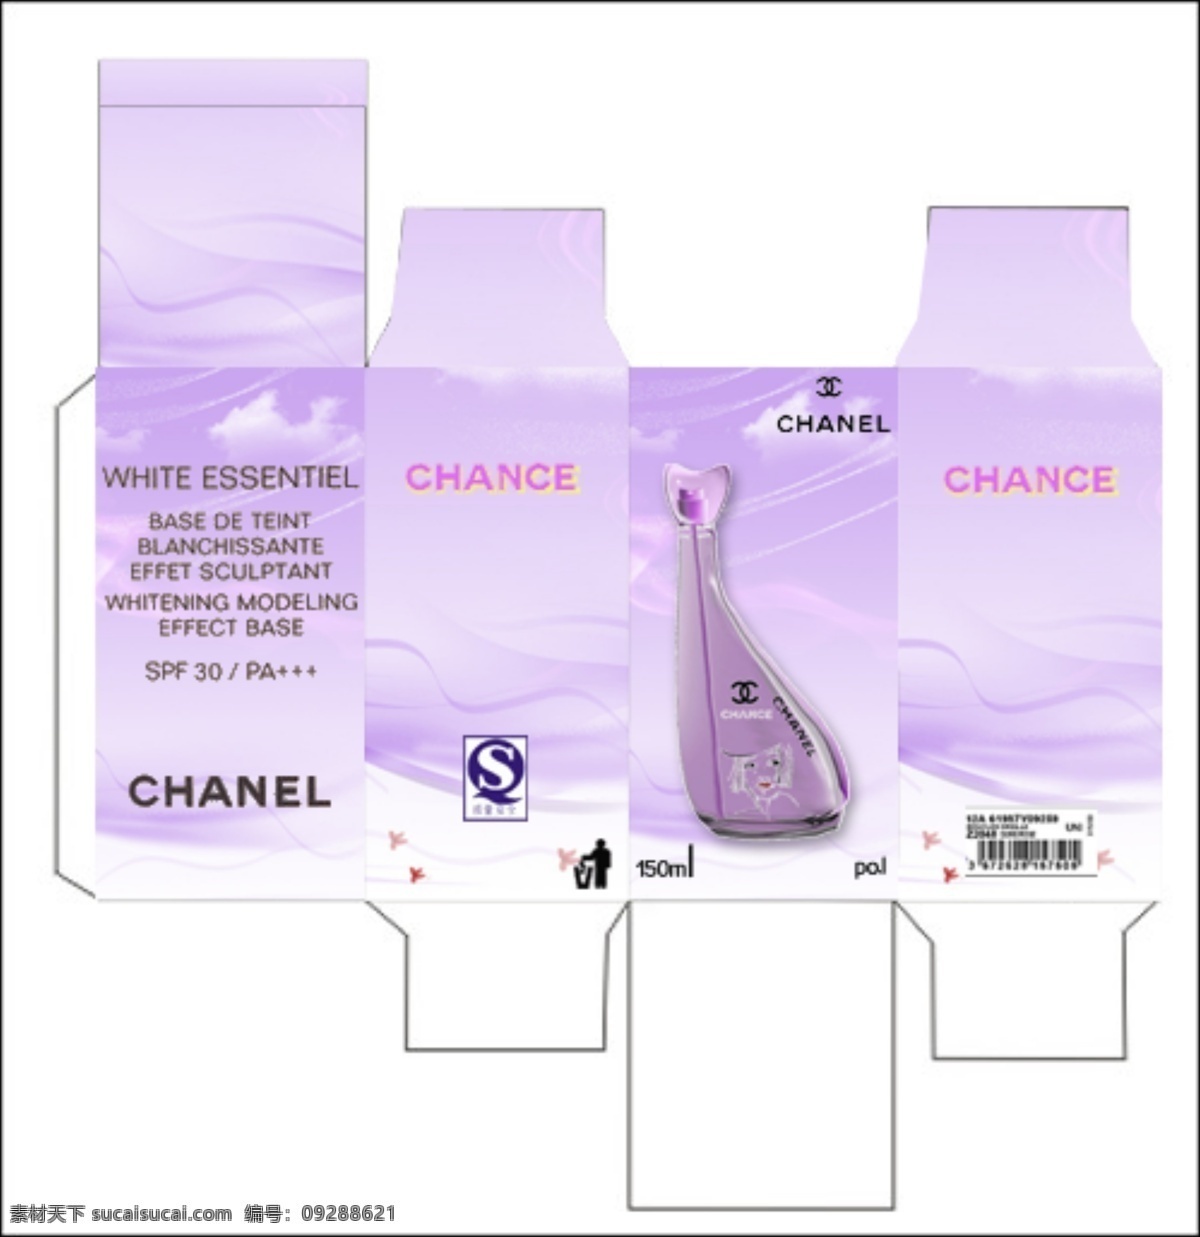 香奈儿 包装盒 设计制作 香水 包装设计 女性 sy 香水包装设计 经典 版 原创设计 原创包装设计